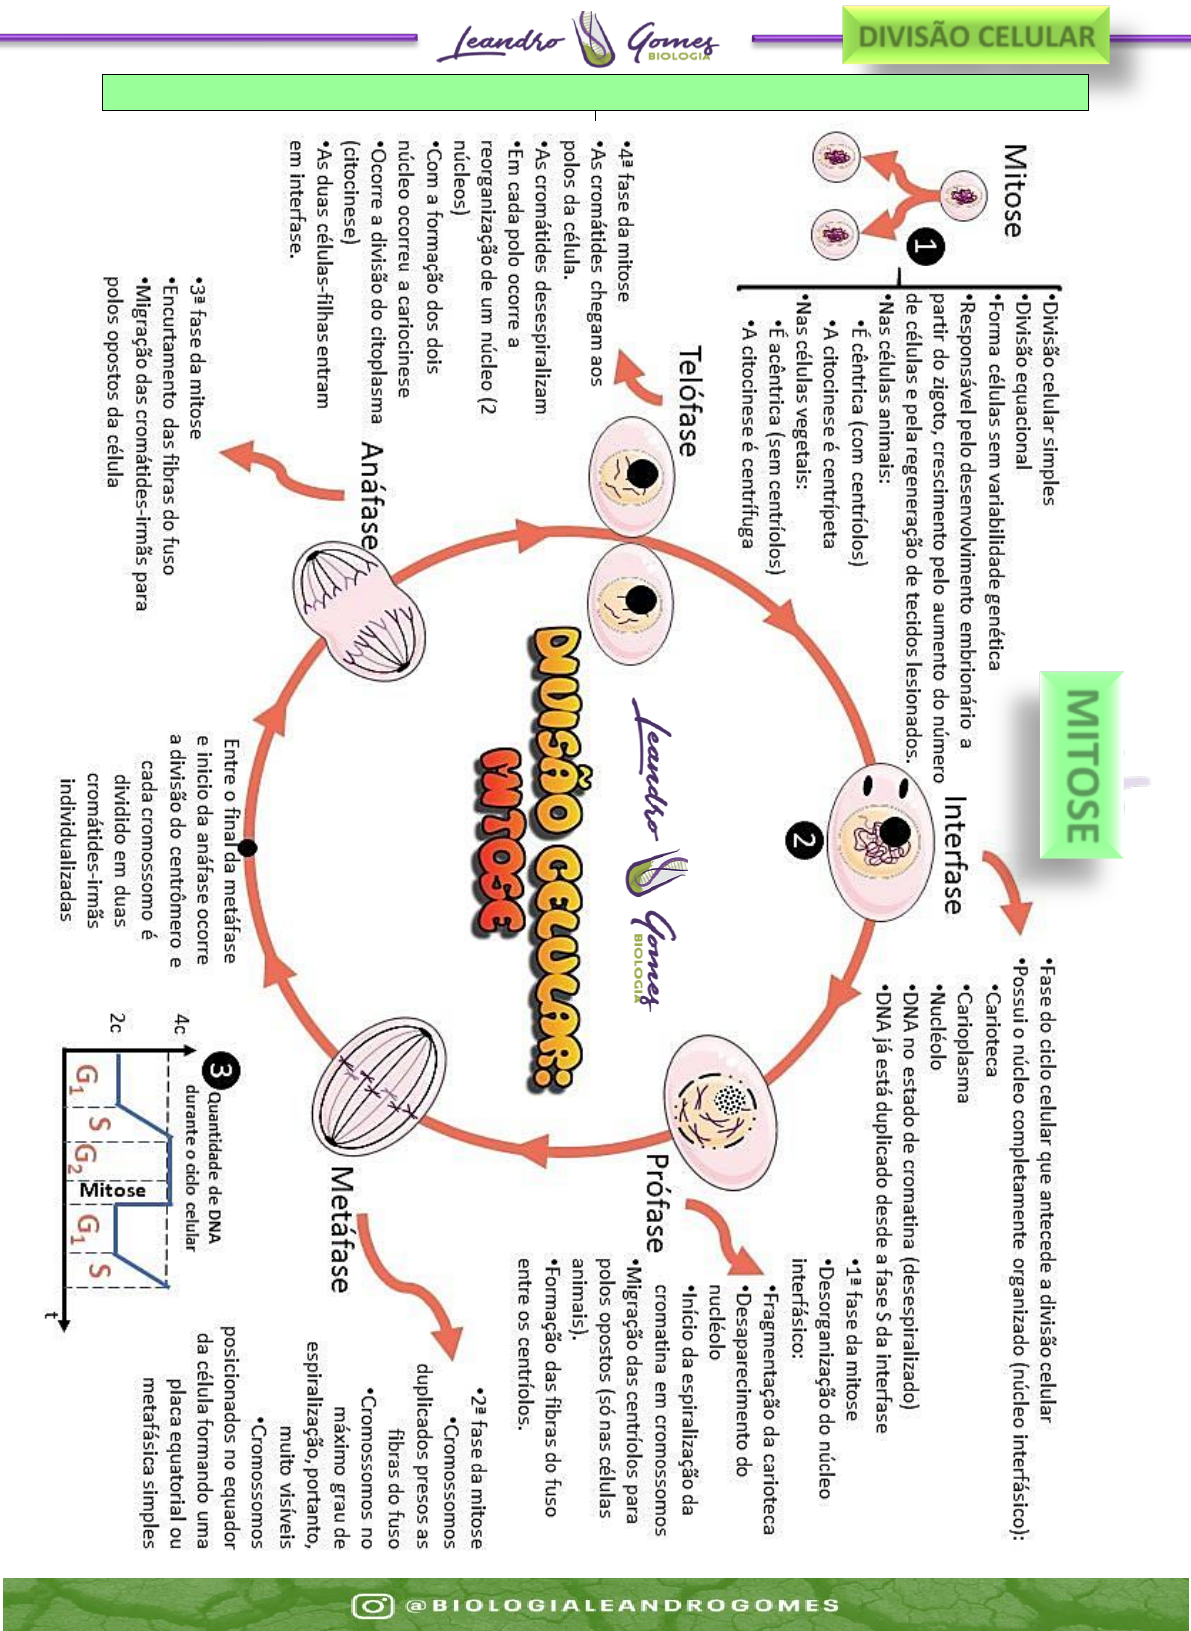 Diagrama do ciclo celular. fases do ciclo celular. ciclo de vida de uma  célula. síntese de dna e divisão celular.